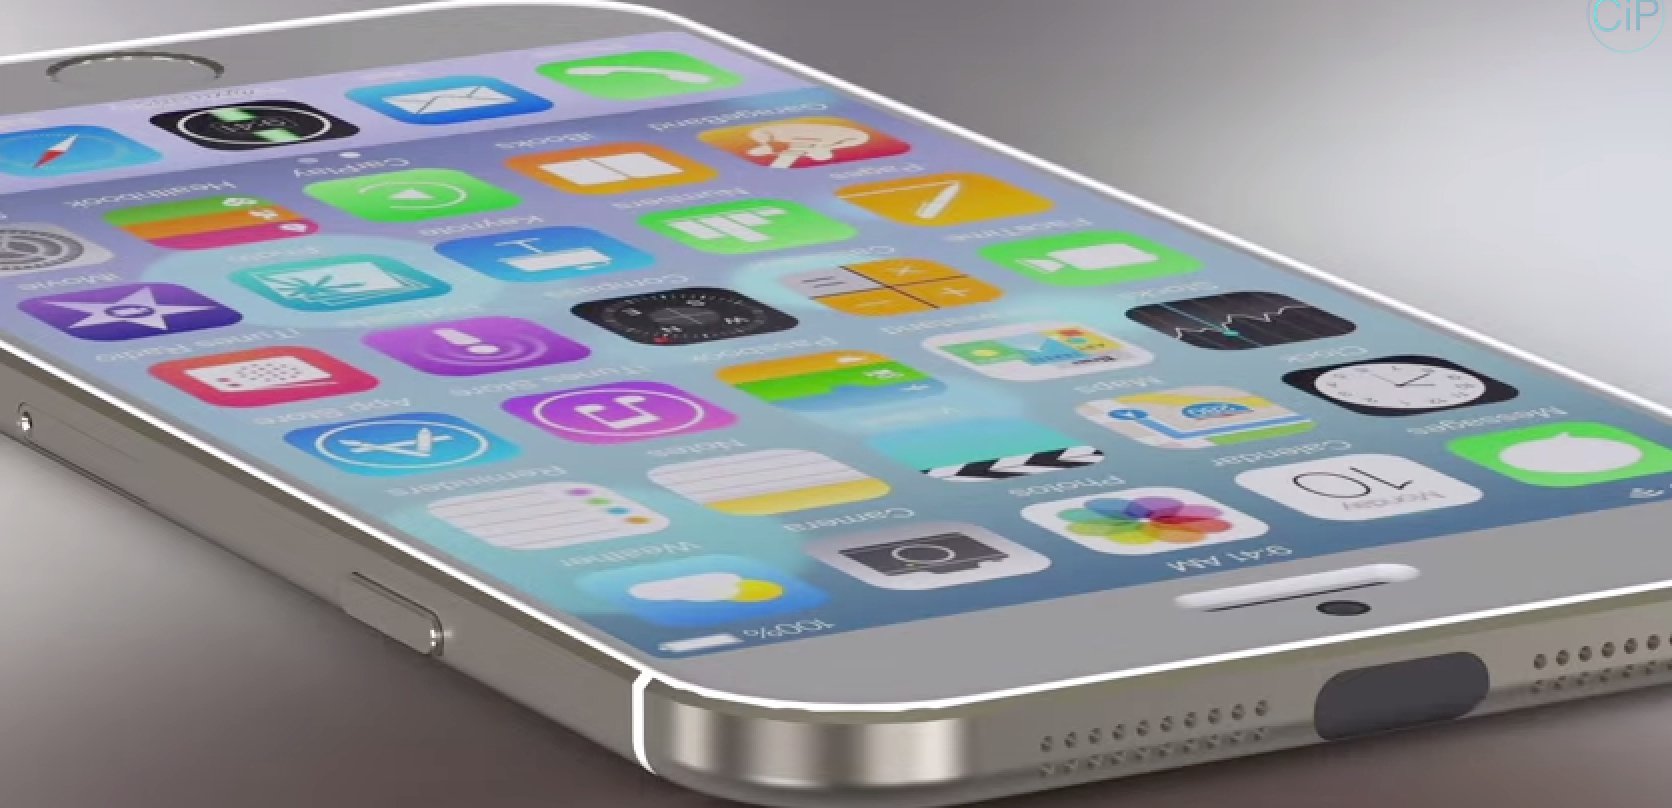 iPhone 6 mit iOS 8 im Vergleich mit Samsung Galaxy S5 (Konzept) 4